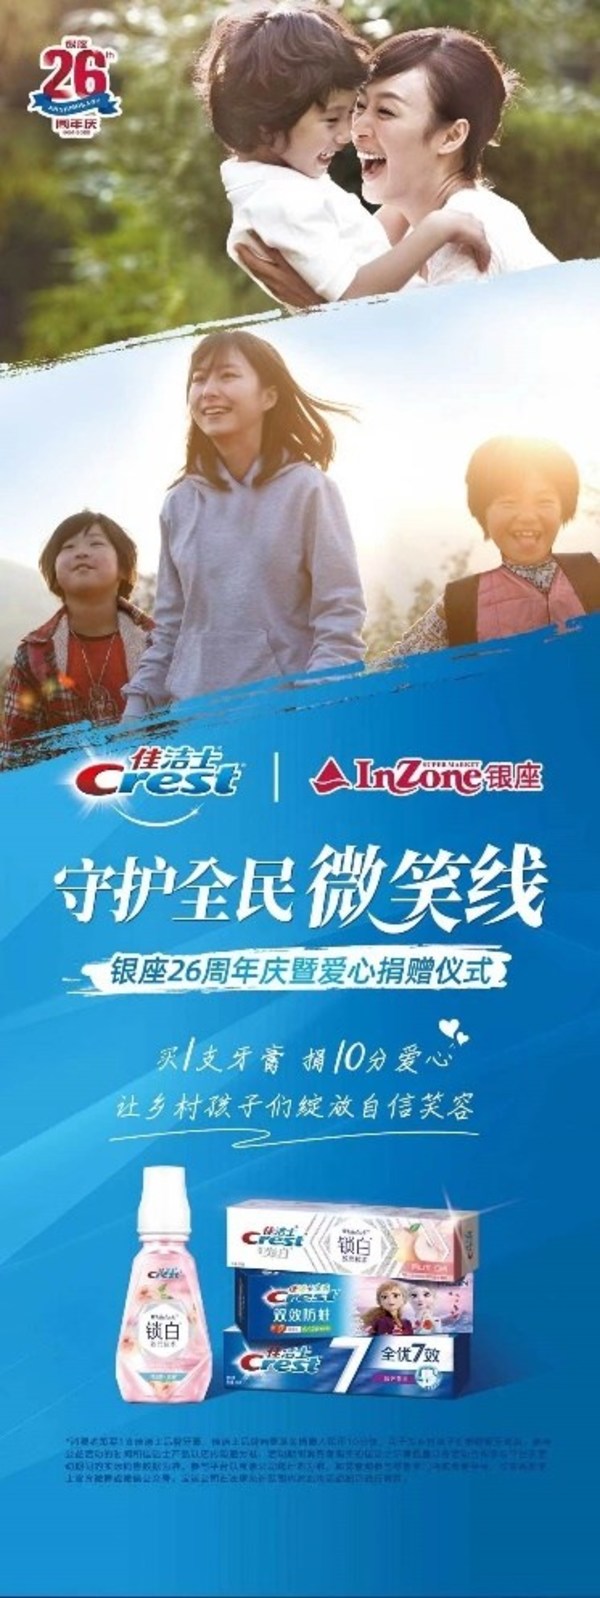 银座26周年庆 佳洁士守护全民微笑线公益活动助乡村儿童口腔健康